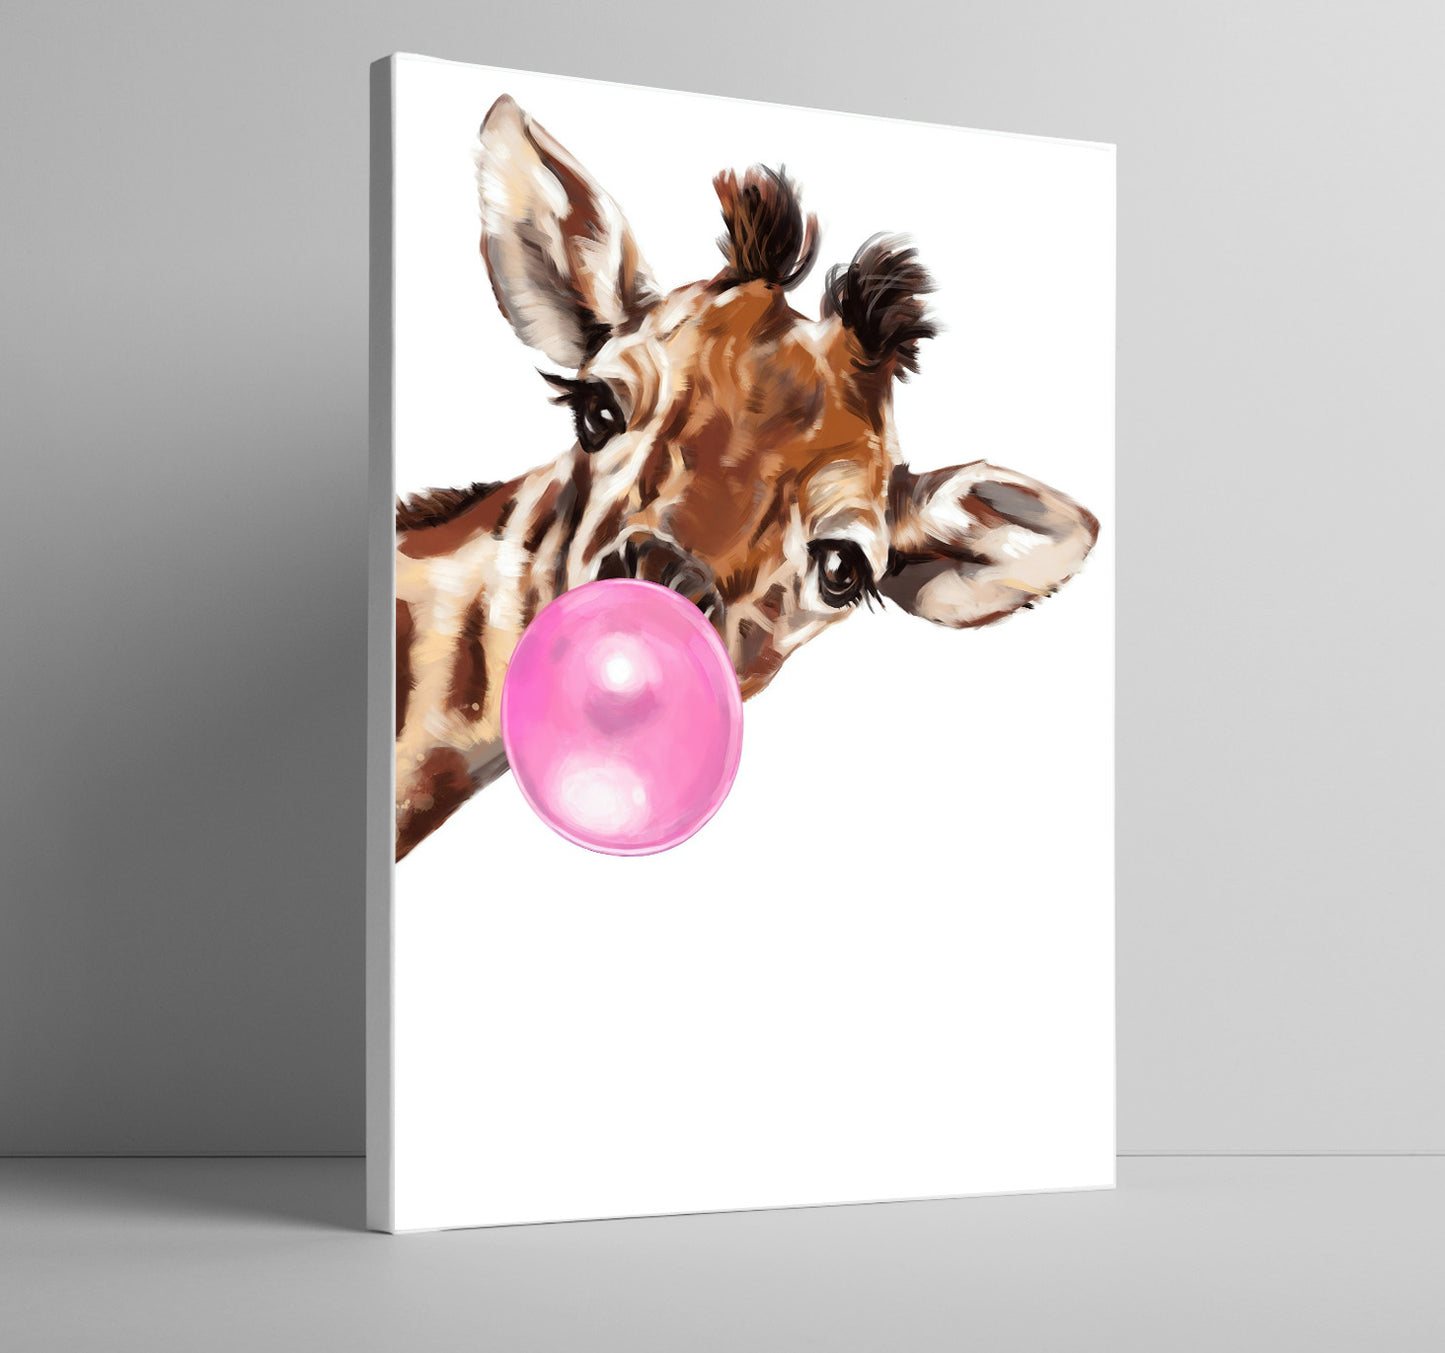 Giraffe with bubble gum